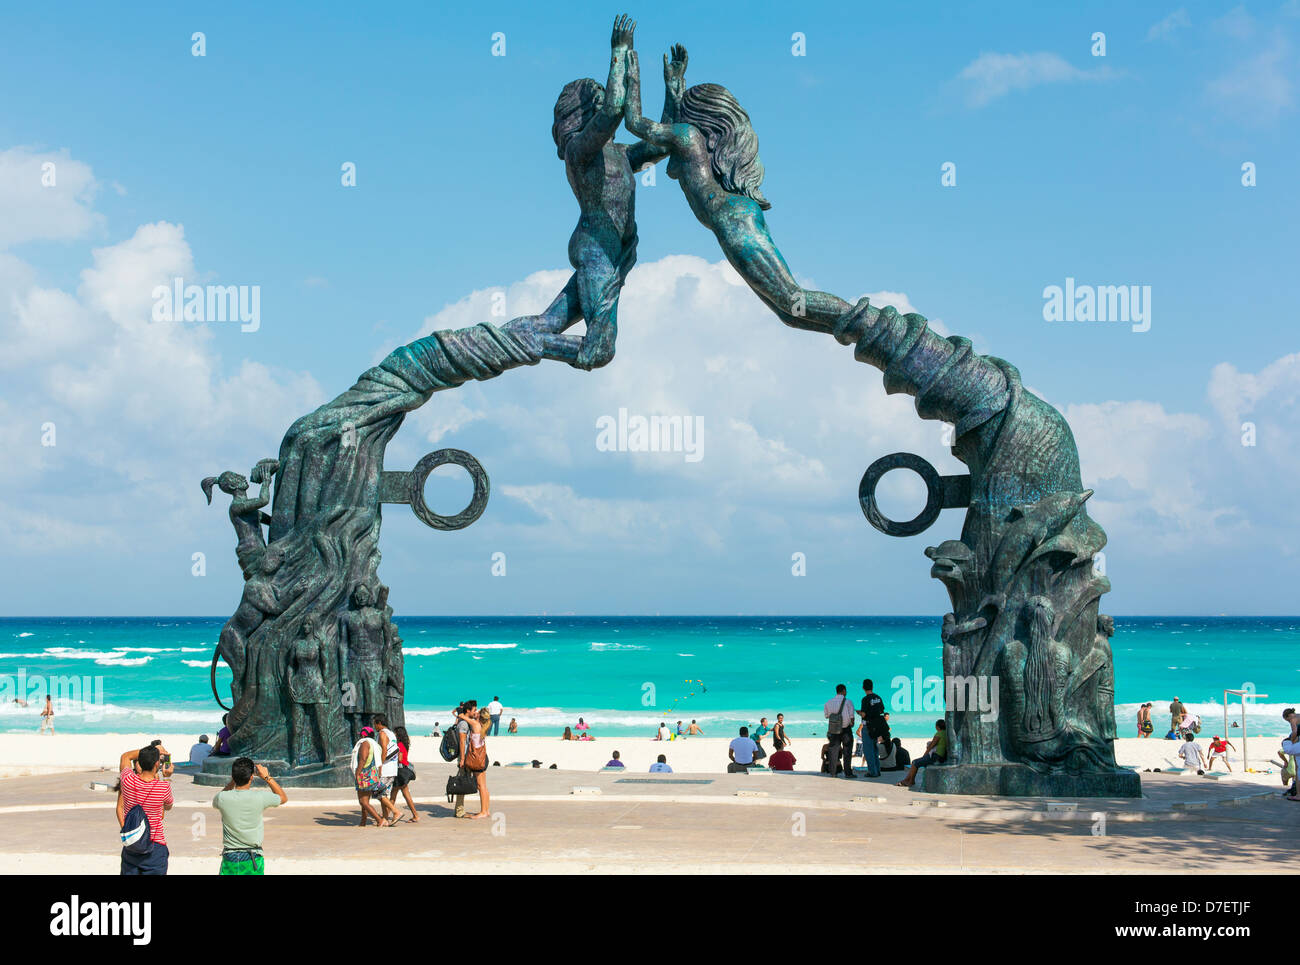 Messico, playa del carmen, portale maya scultura "gateway ayan' situato nel Parque fundadores dallo scultore jose arturo tavares Foto Stock